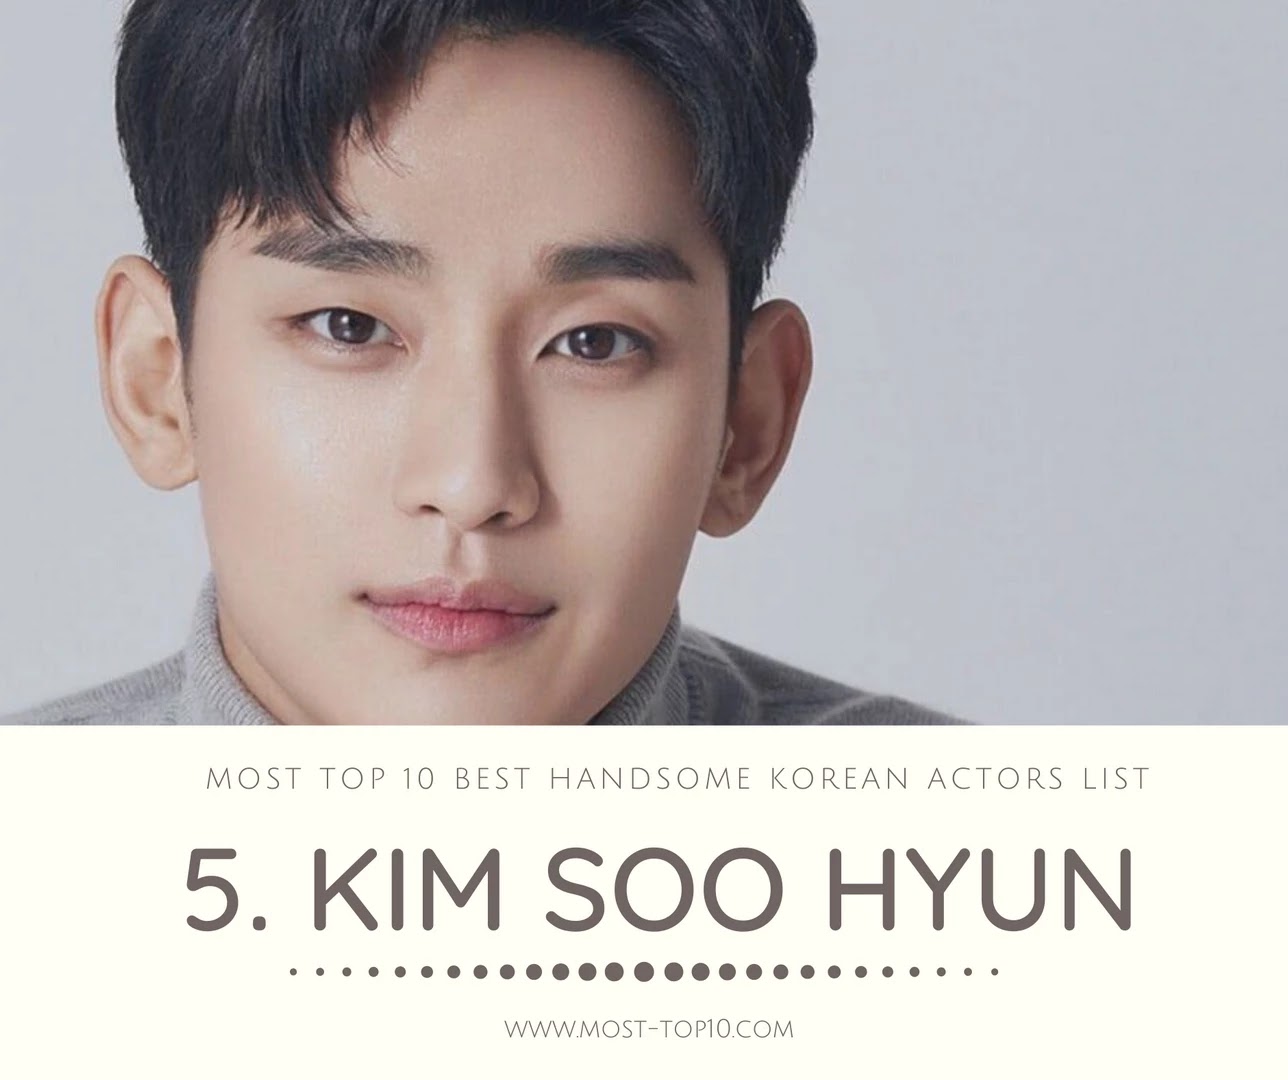 Most Top 10 Best Handsome Korean Actors List